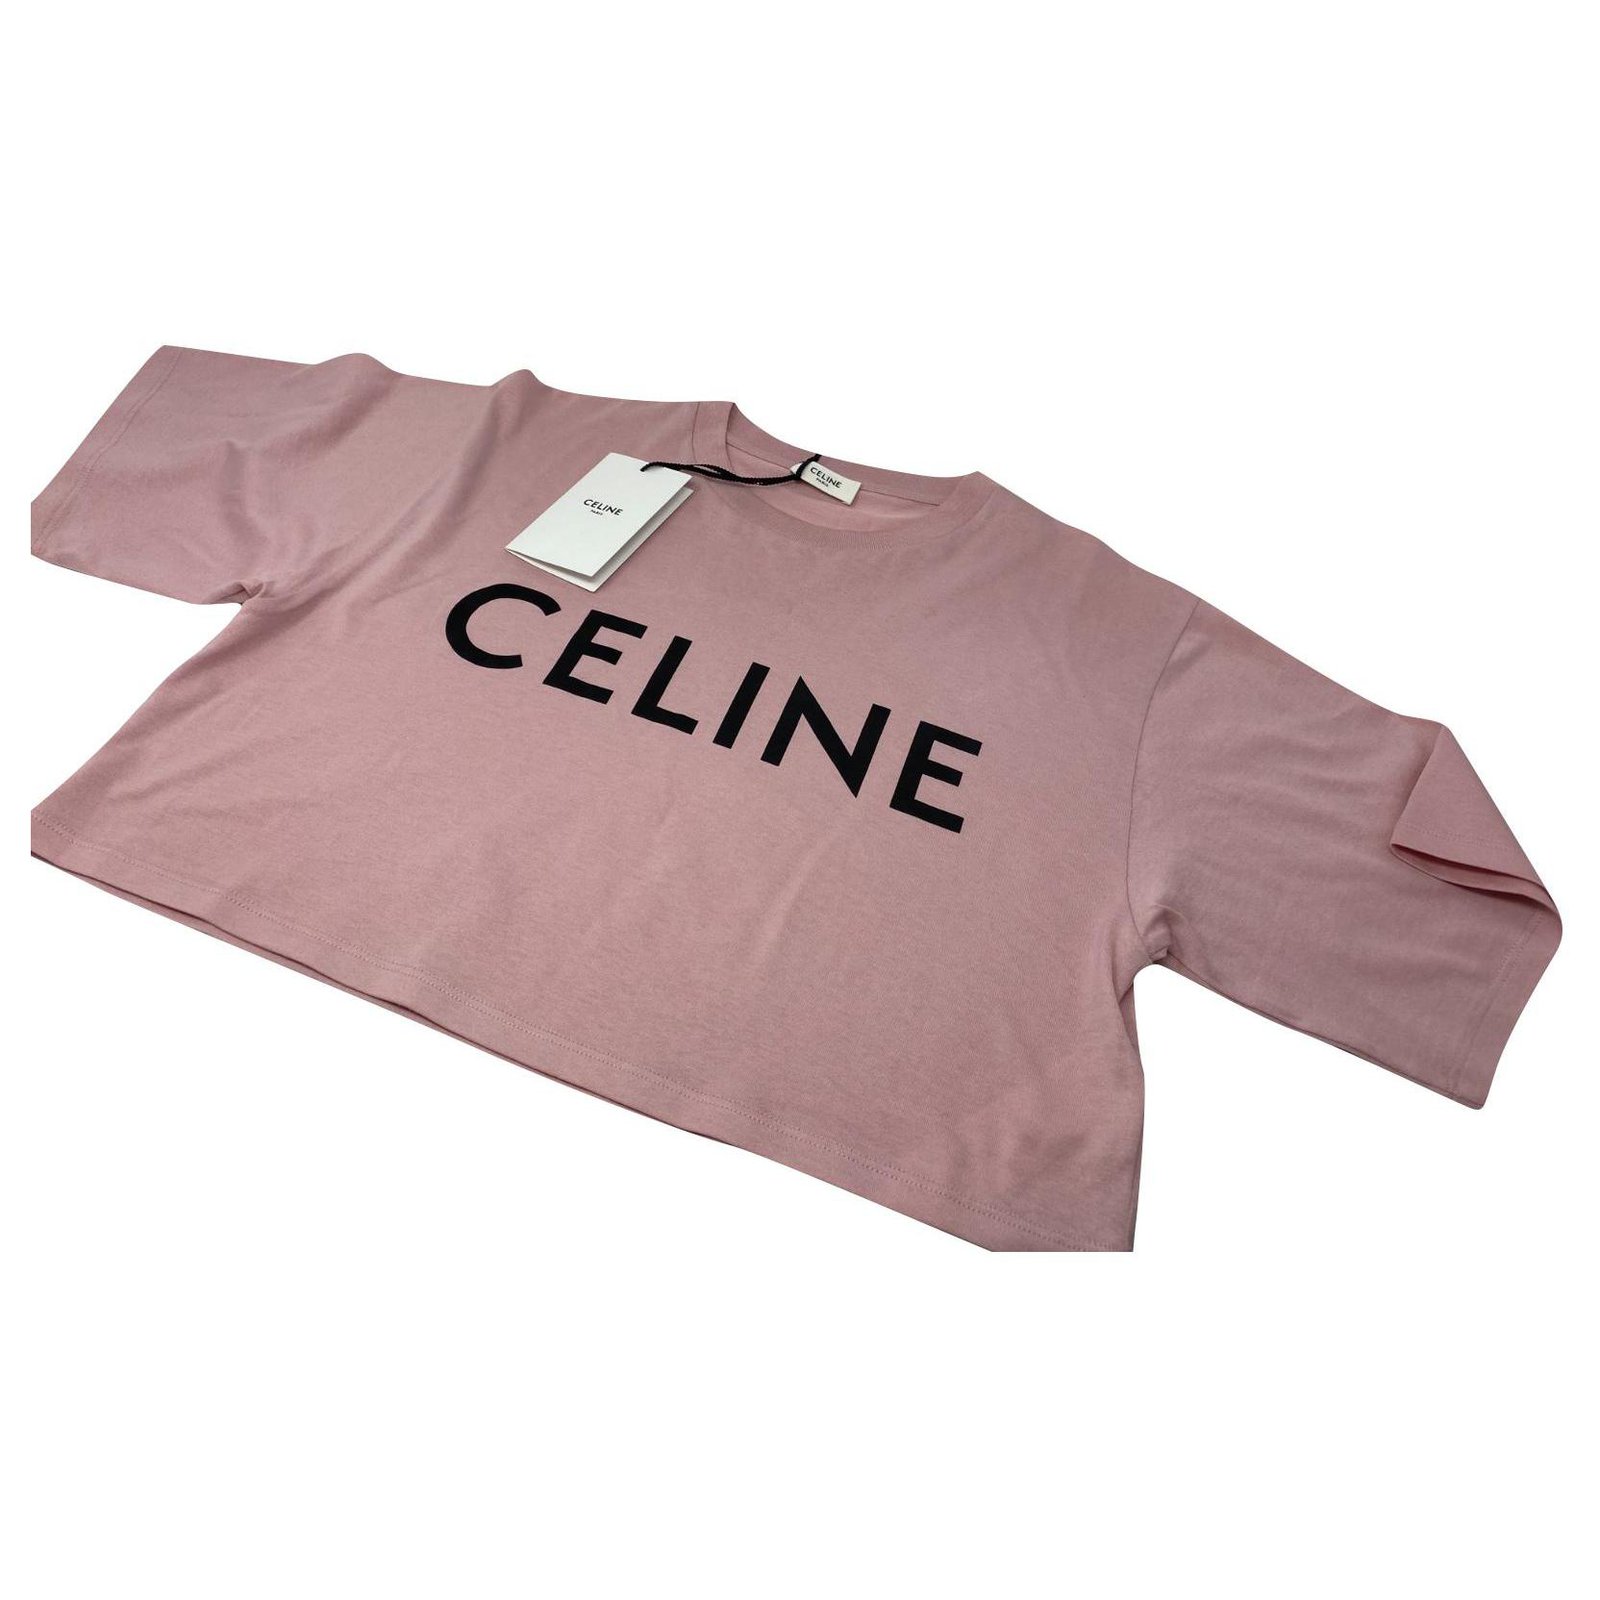 https://cdn1.jolicloset.com/imgr/full/2021/05/296800-1/celine-pink-cotton-crop-top.jpg